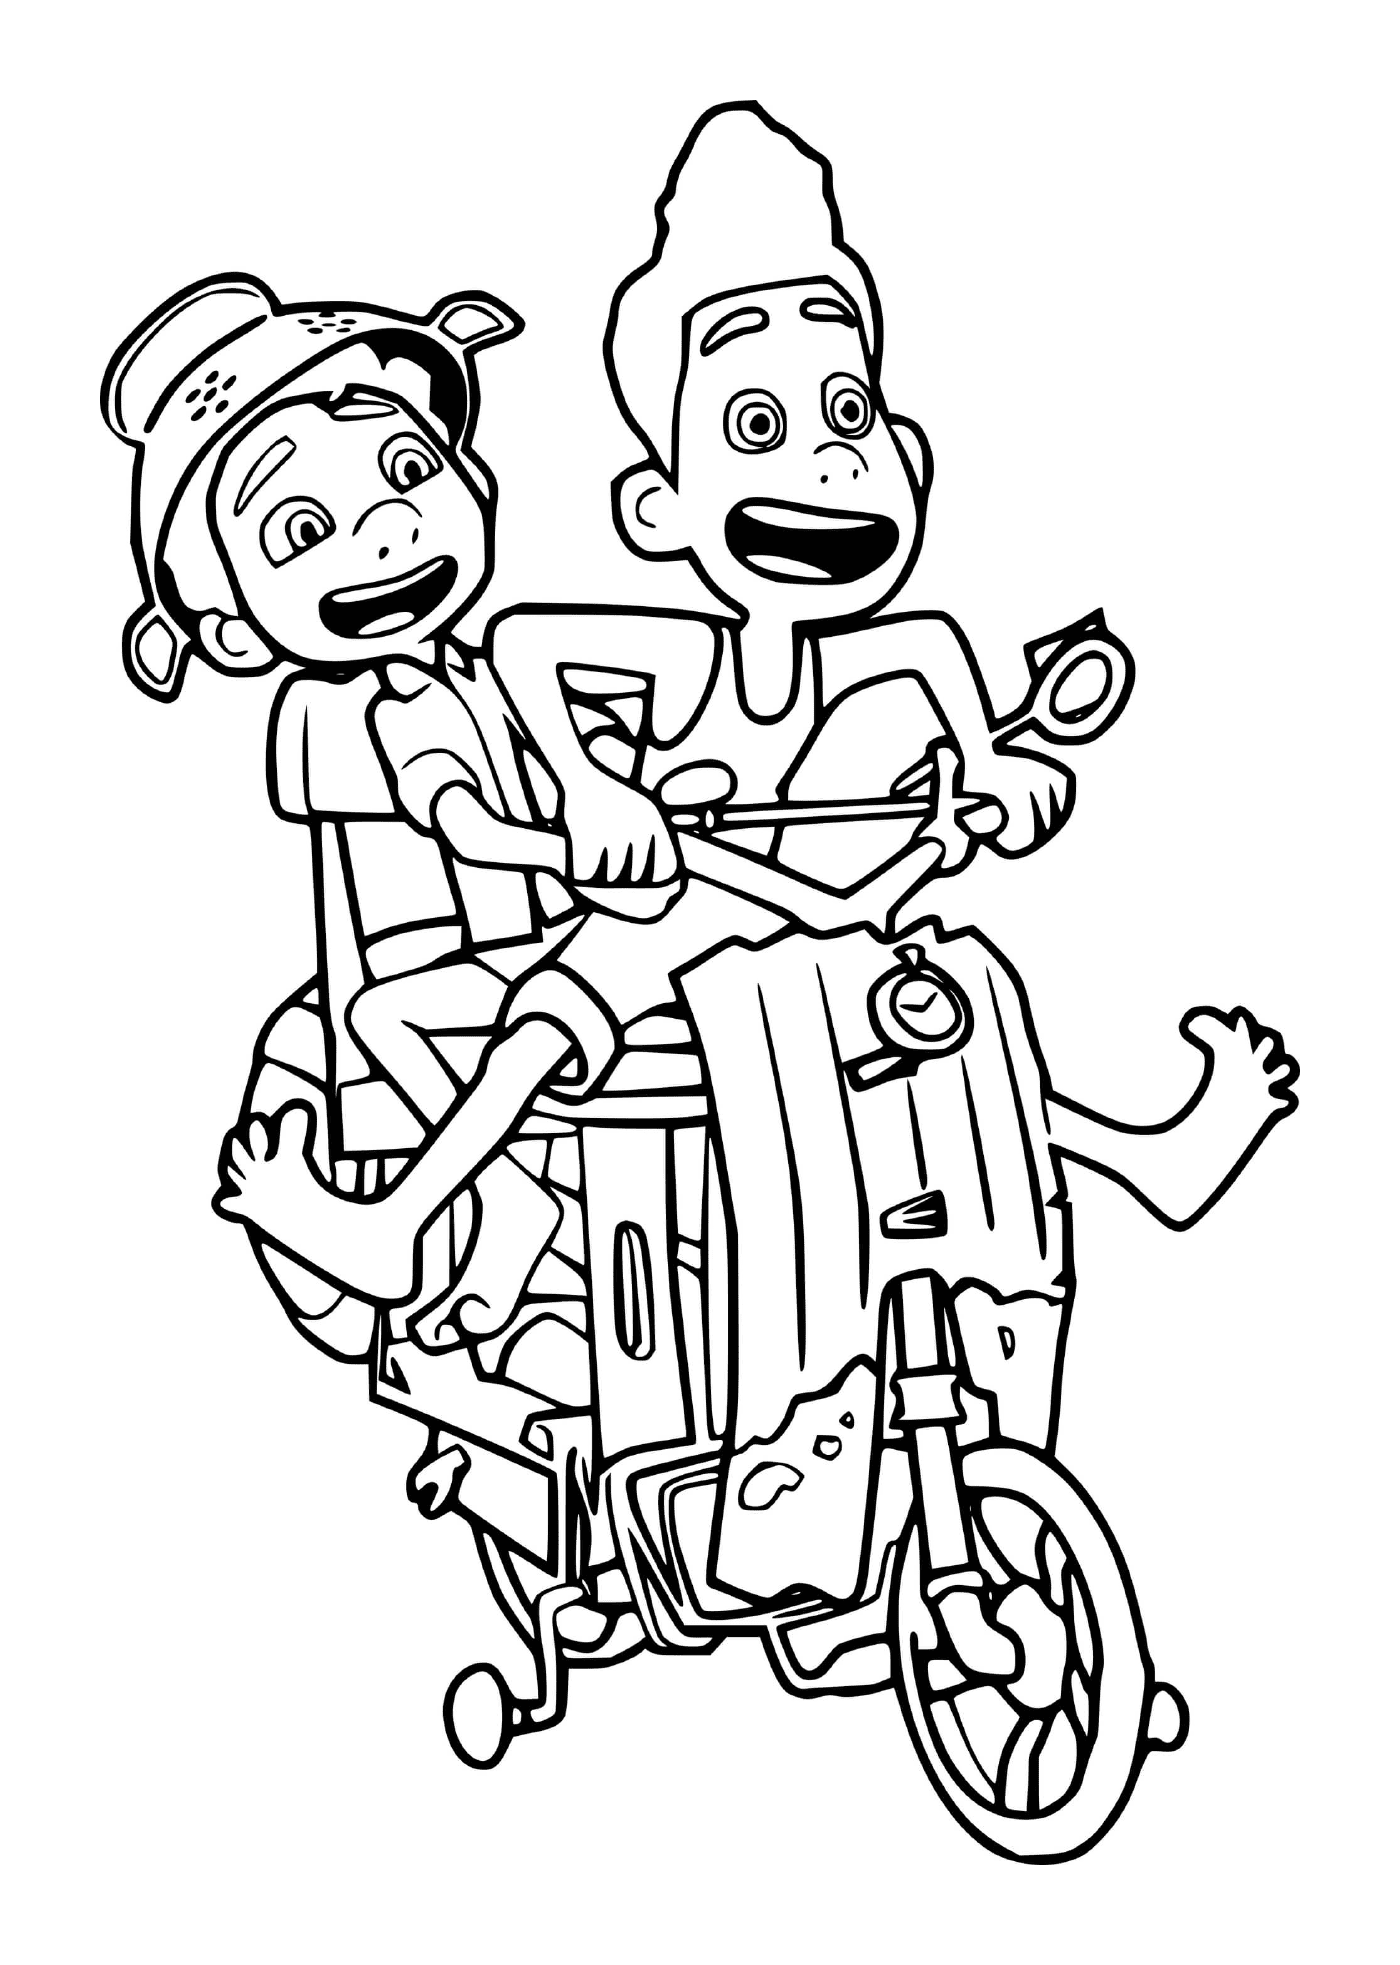   Garçon et fille sur une moto 